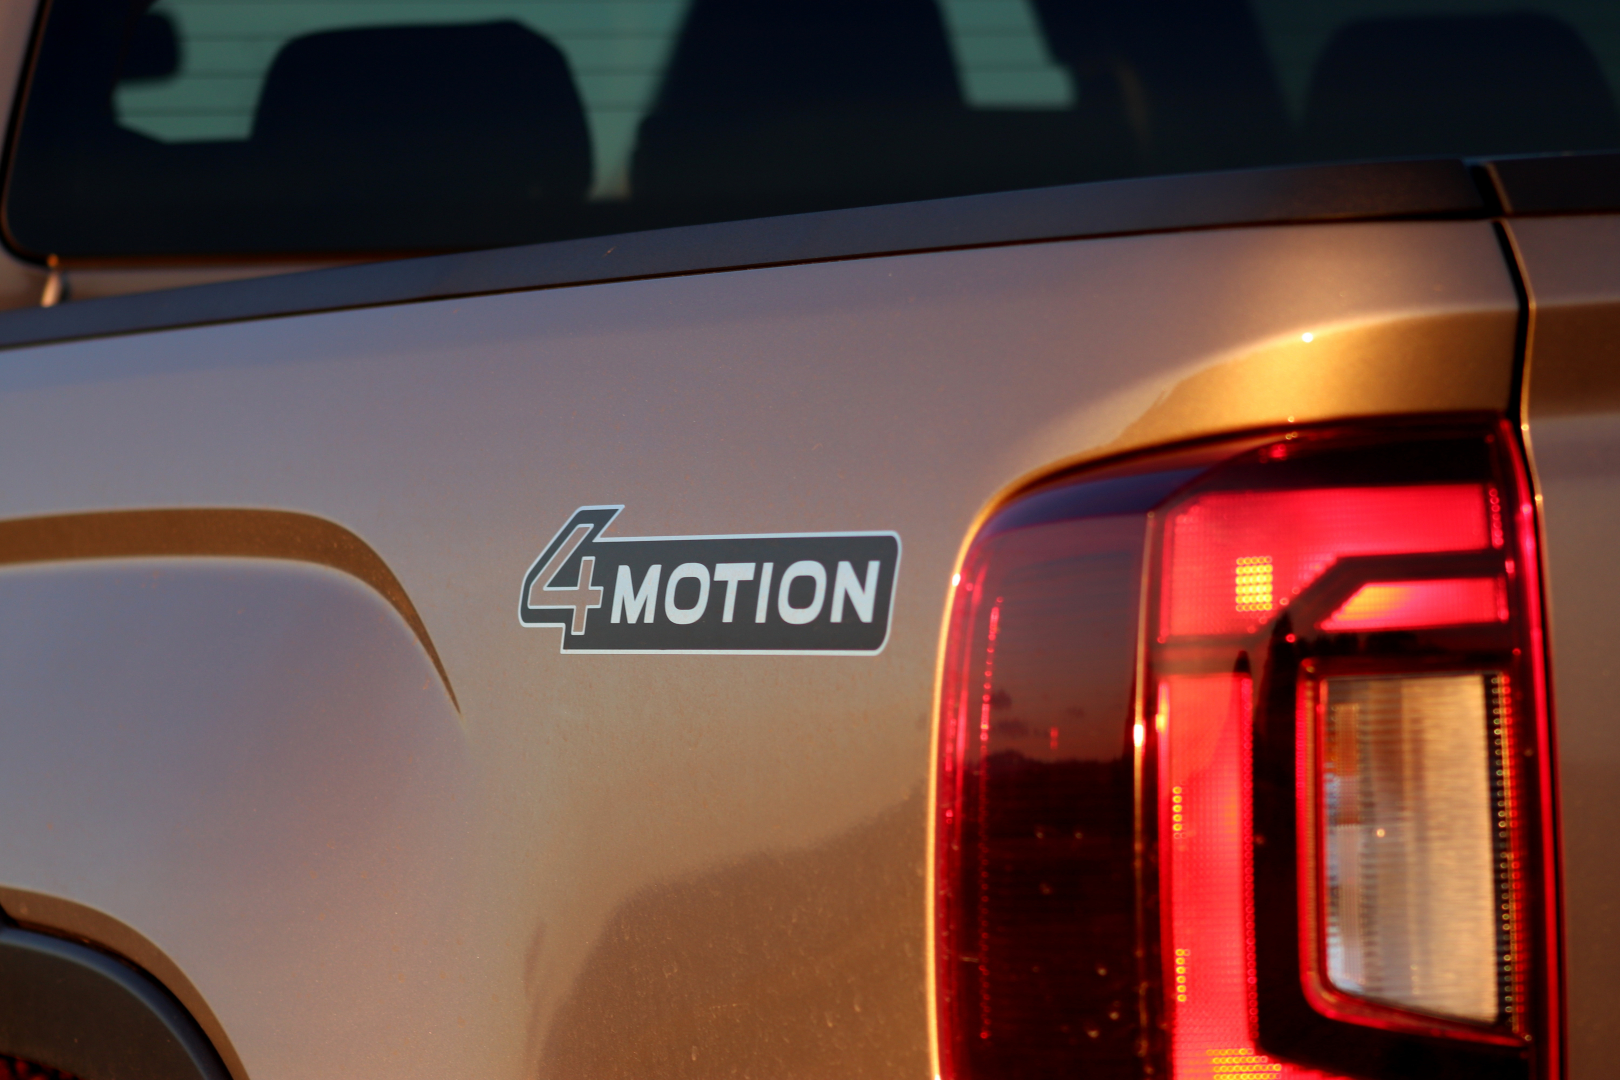 Pohon všech kol 4Motion je k dispozici ve dvou variantách v závislosti na dané motorizaci. Zde najdeme pokročilejší systém pohonu všech kol.